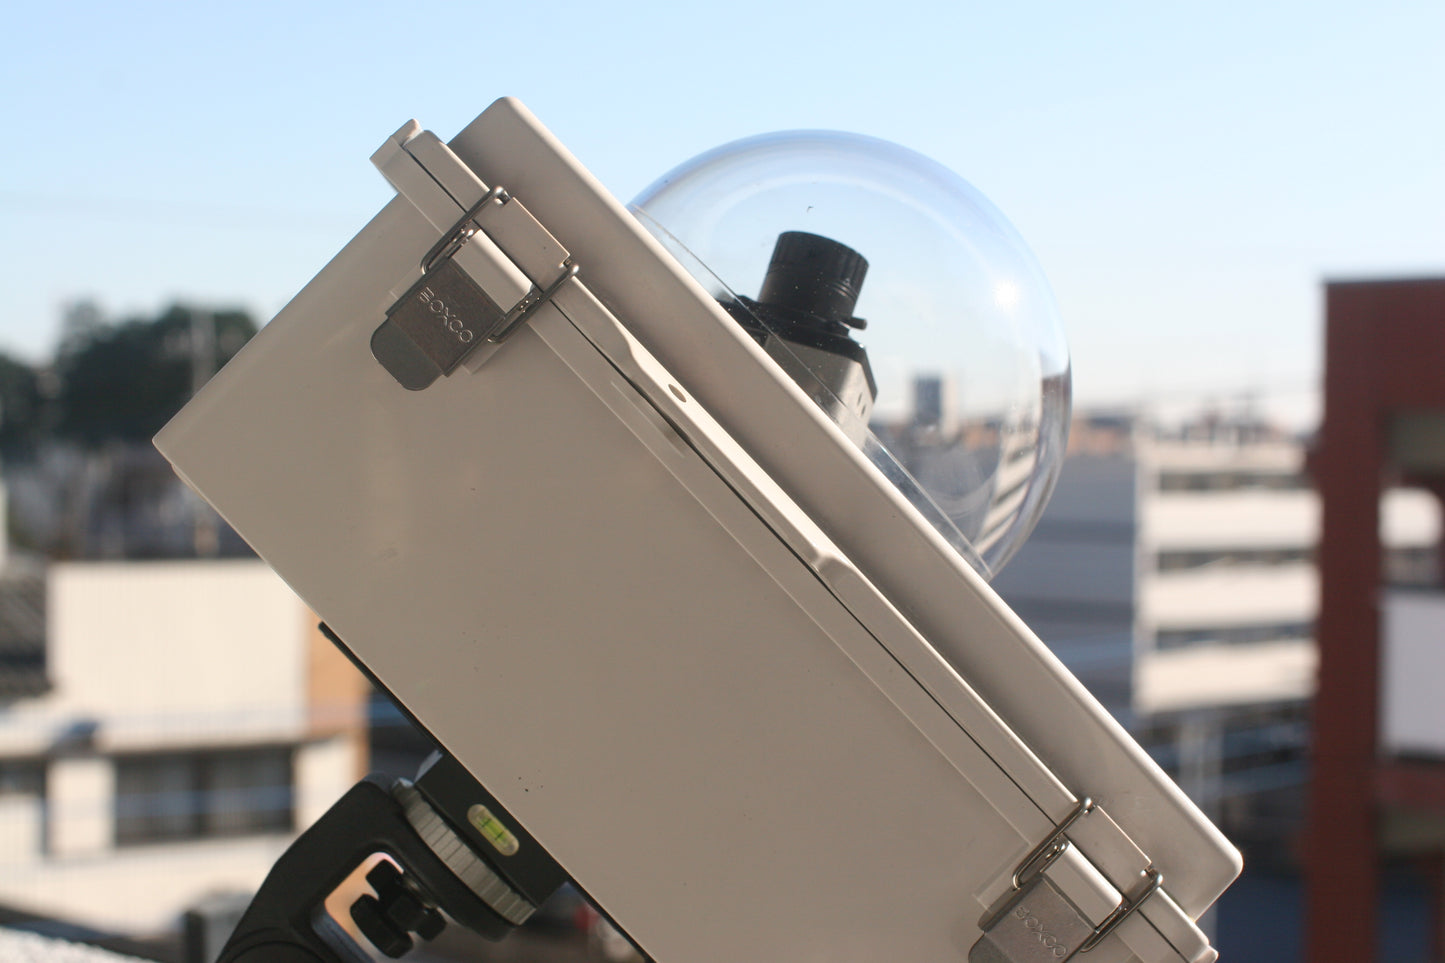 スカイカメラ 長期連続運用タイプ ケーブル延長最大20m レンズ交換タイプ